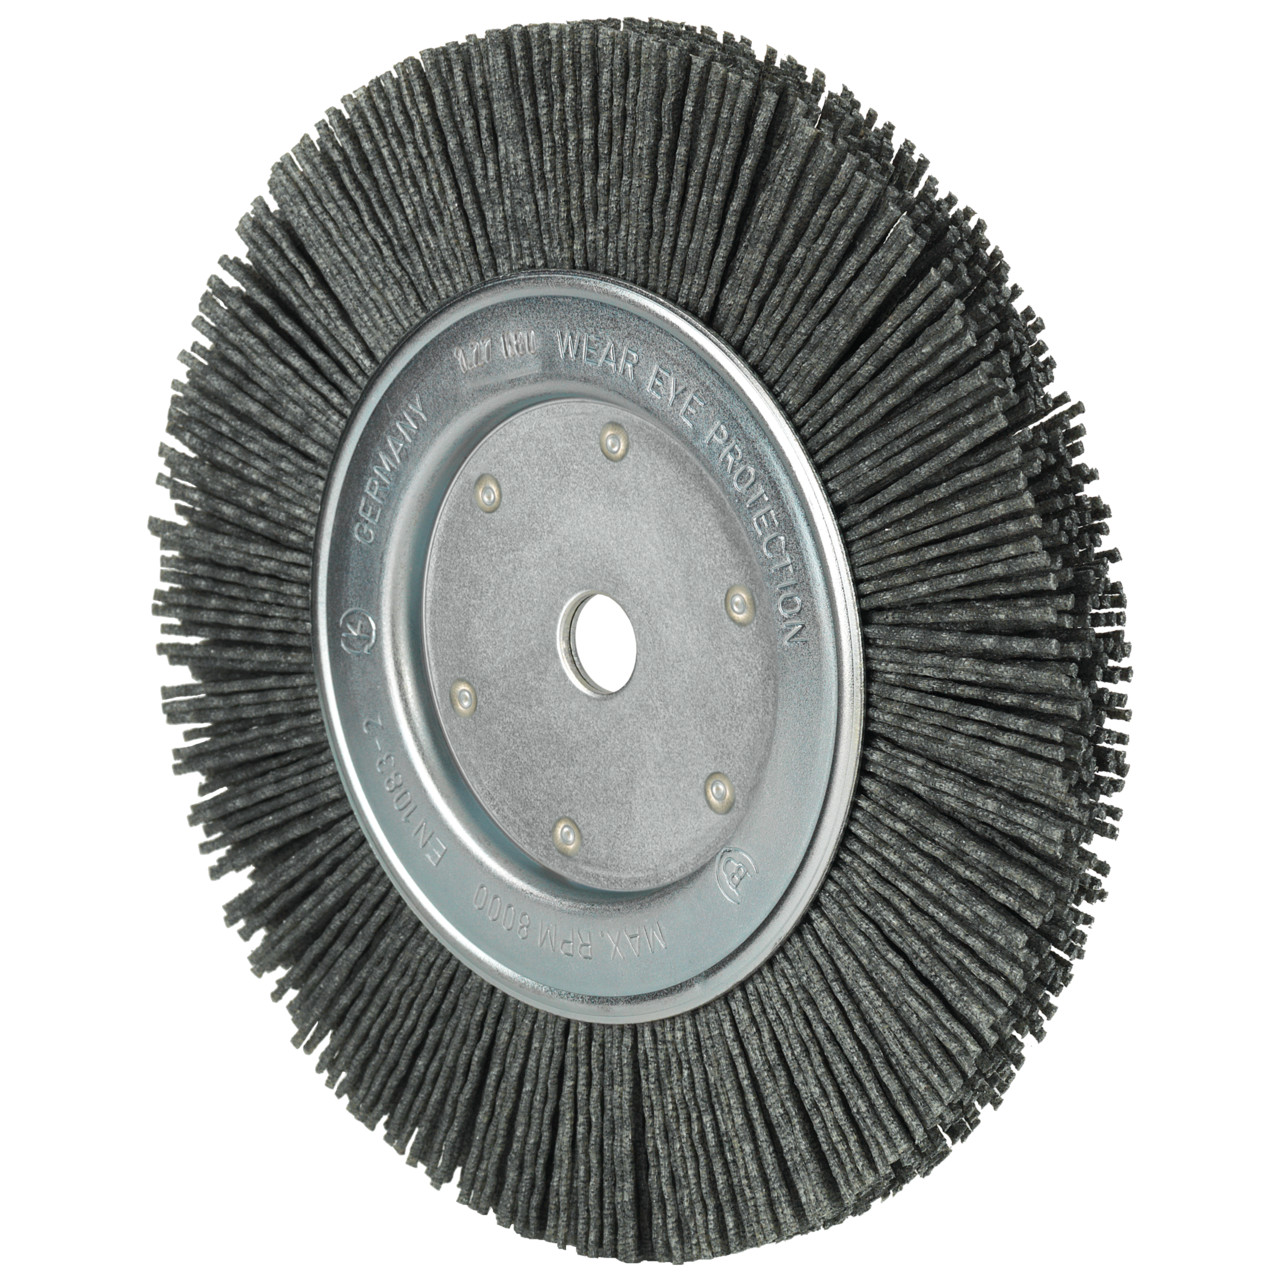 Tyrolit Round brushes DxWxLxH 200x13x43x50.8 For universal use, shape: 1RDK - (round brushes), Art. 227435